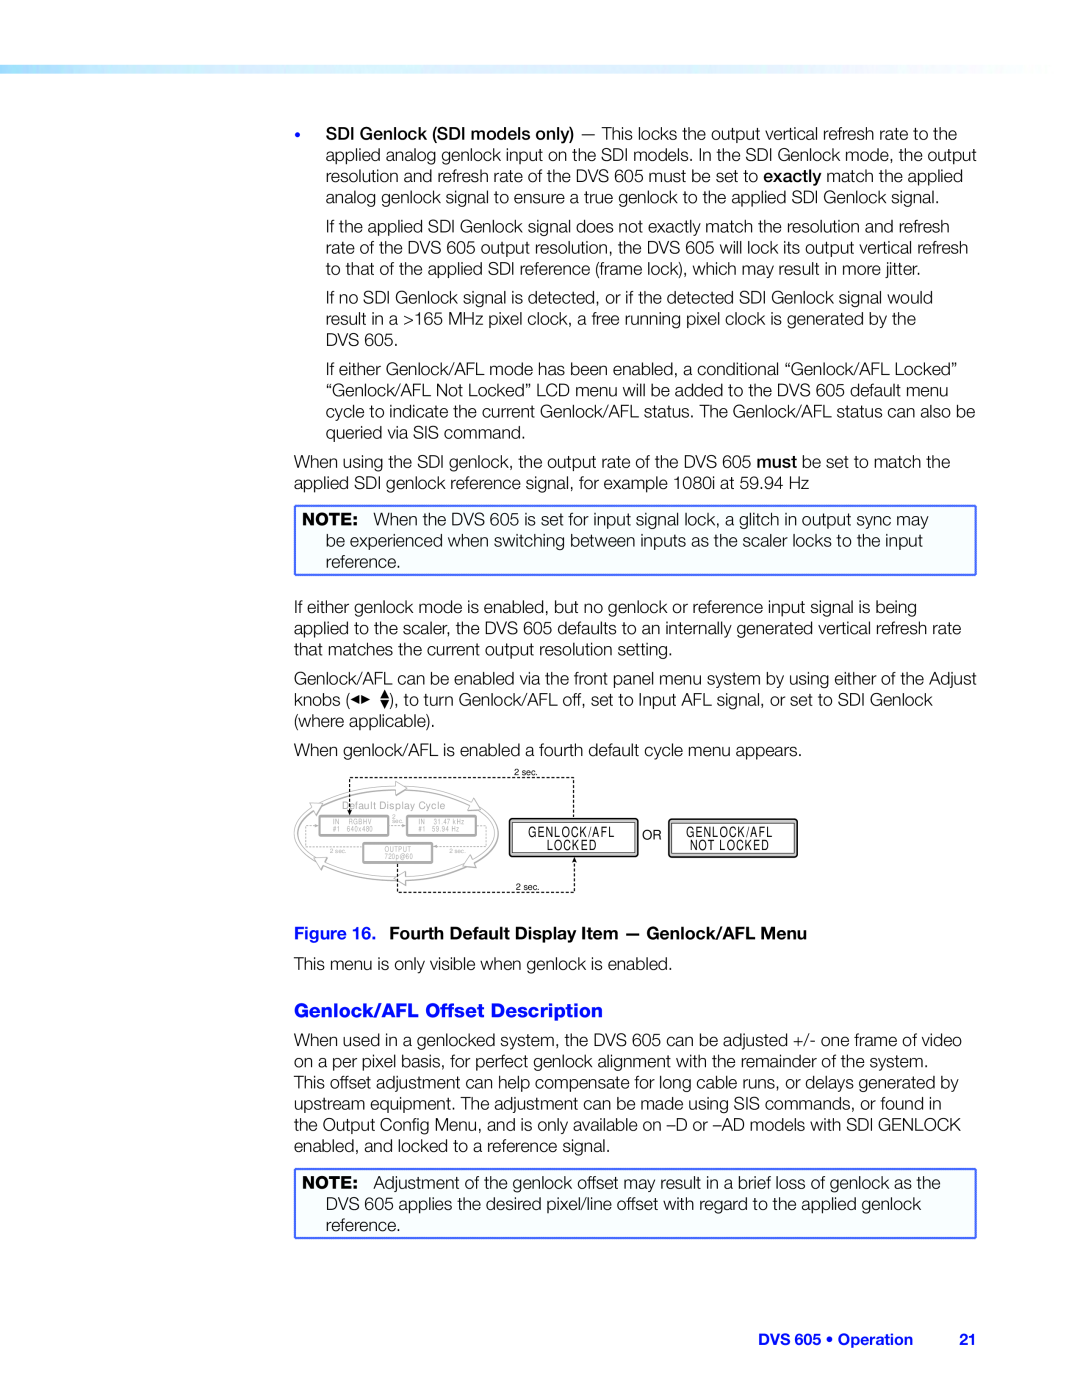 Extron electronic DVS 605 manual Genlock/AFL Offset Description 